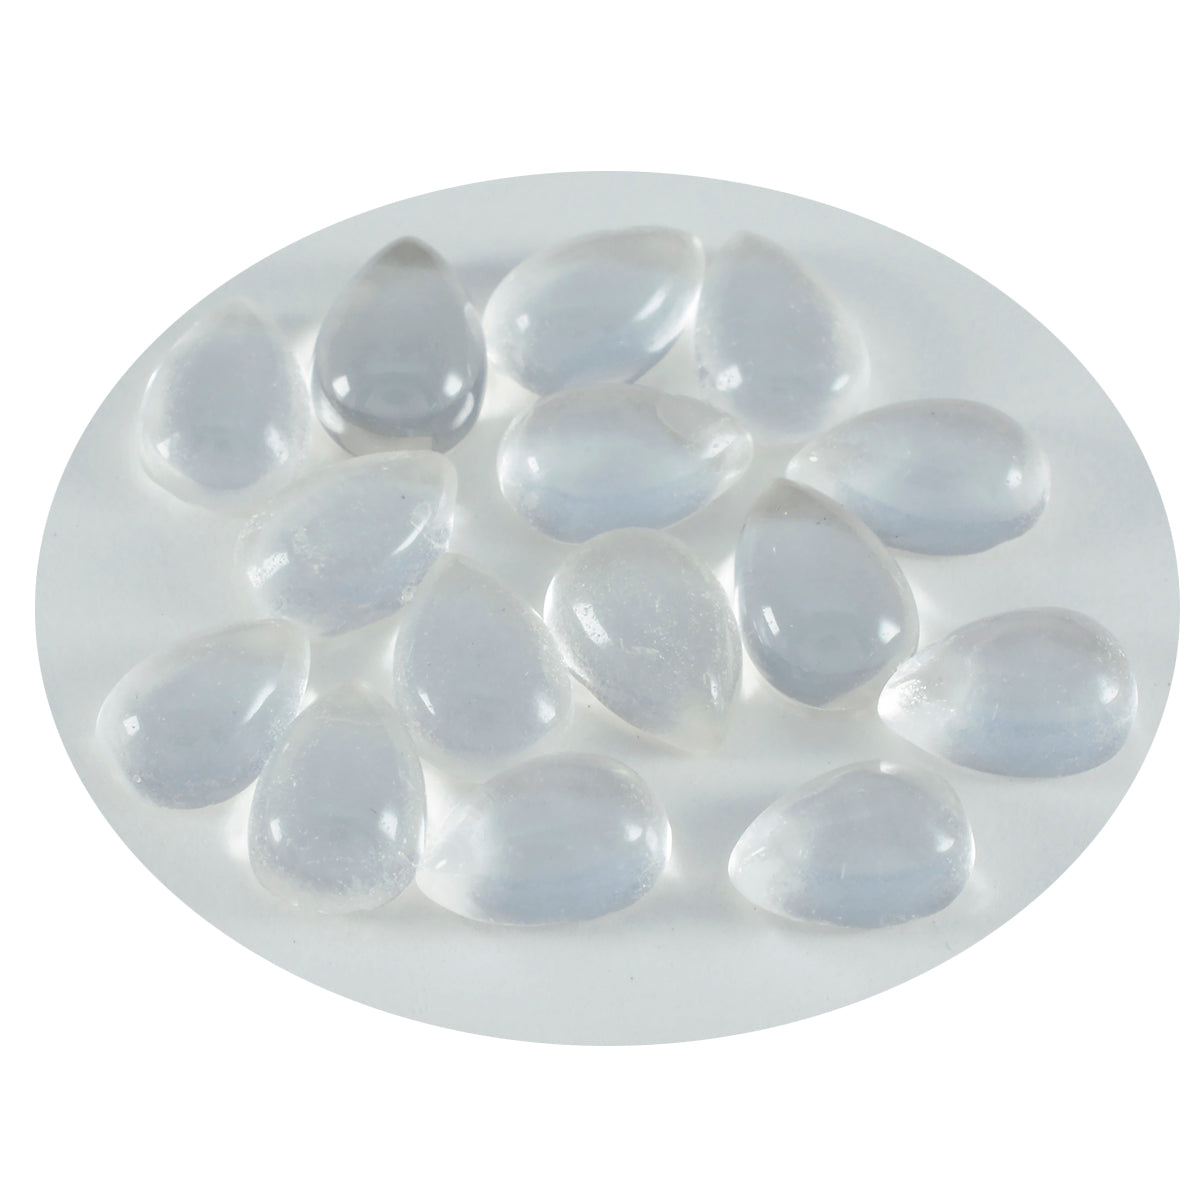 Riyogems – cabochon de quartz en cristal blanc, 7x10mm, en forme de poire, pierres précieuses de qualité de beauté, 1 pièce